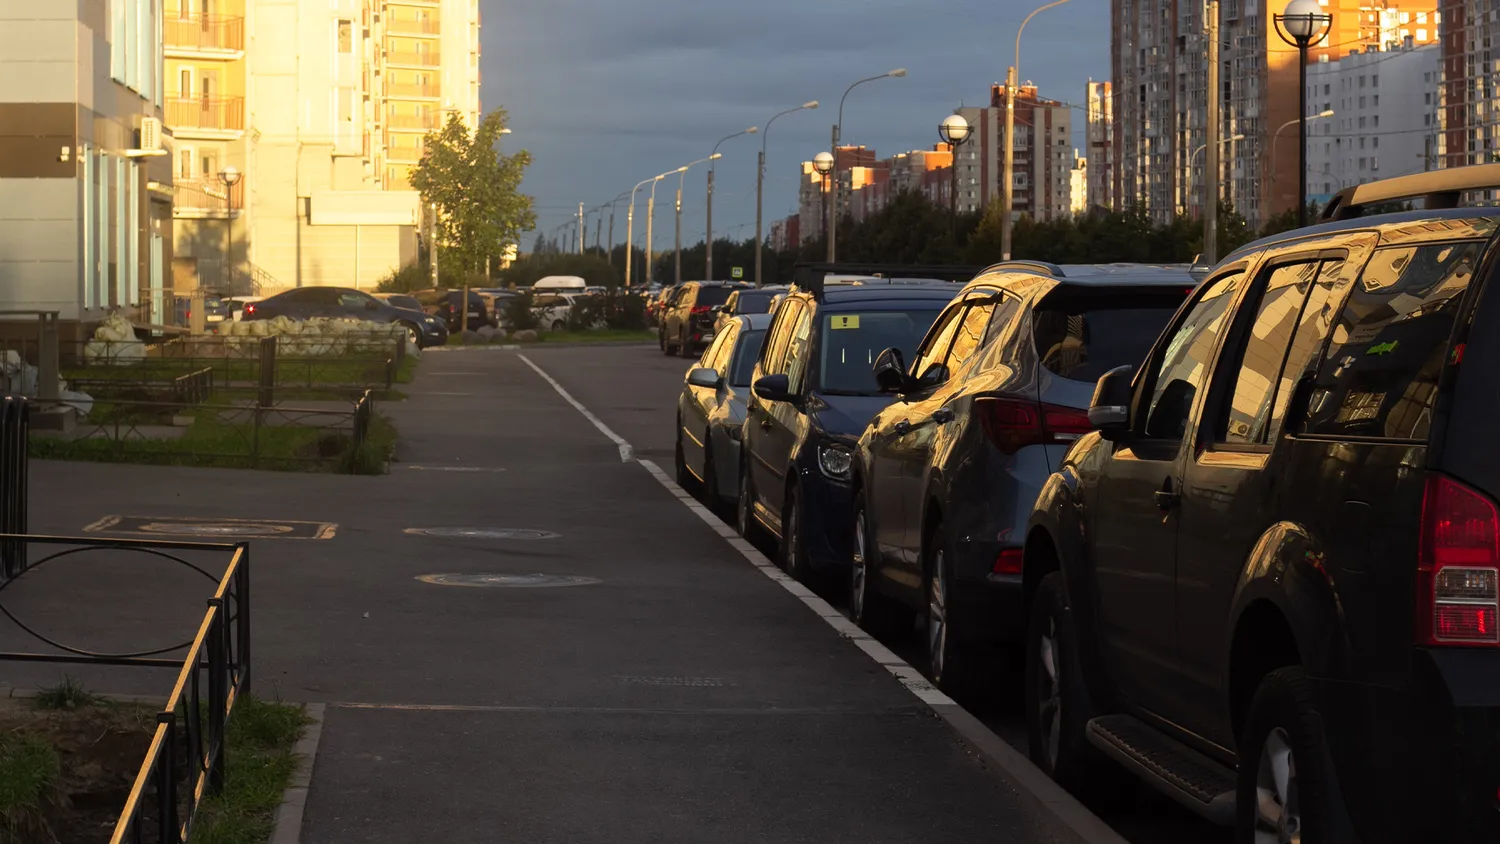 Автомобили припаркованы под окнами многоэтажки, жильцы против: что говорит закон